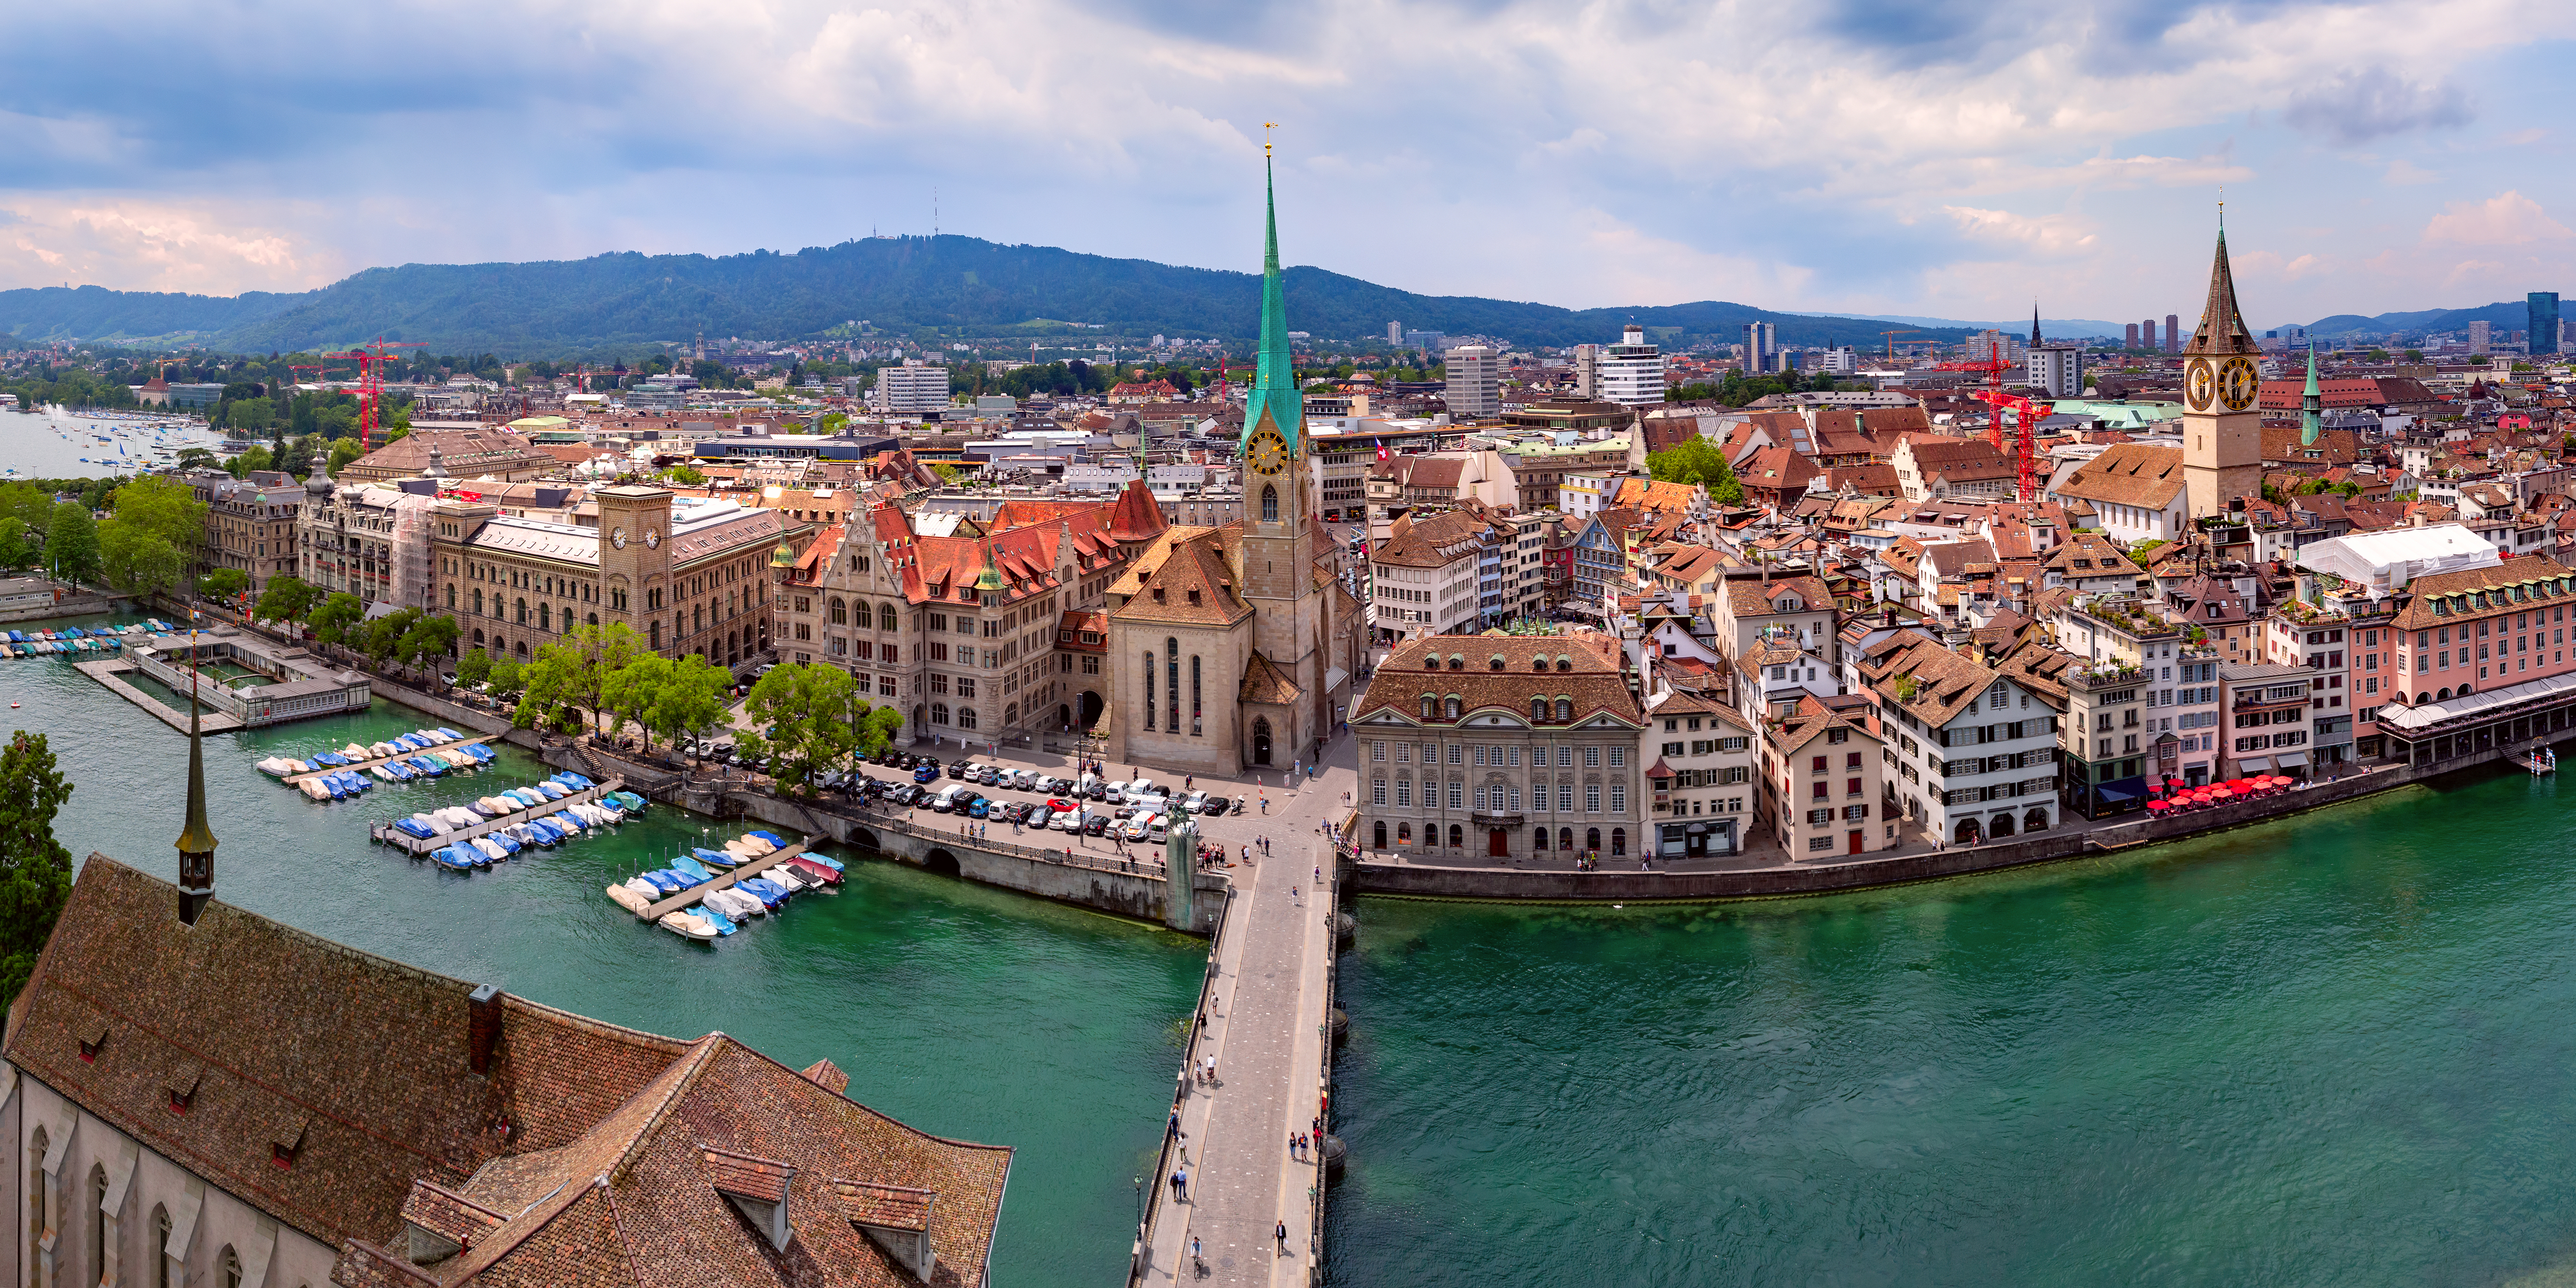 Selbständige Escort Dame in der Schweiz: Wo in Zürich kann man arbeiten?